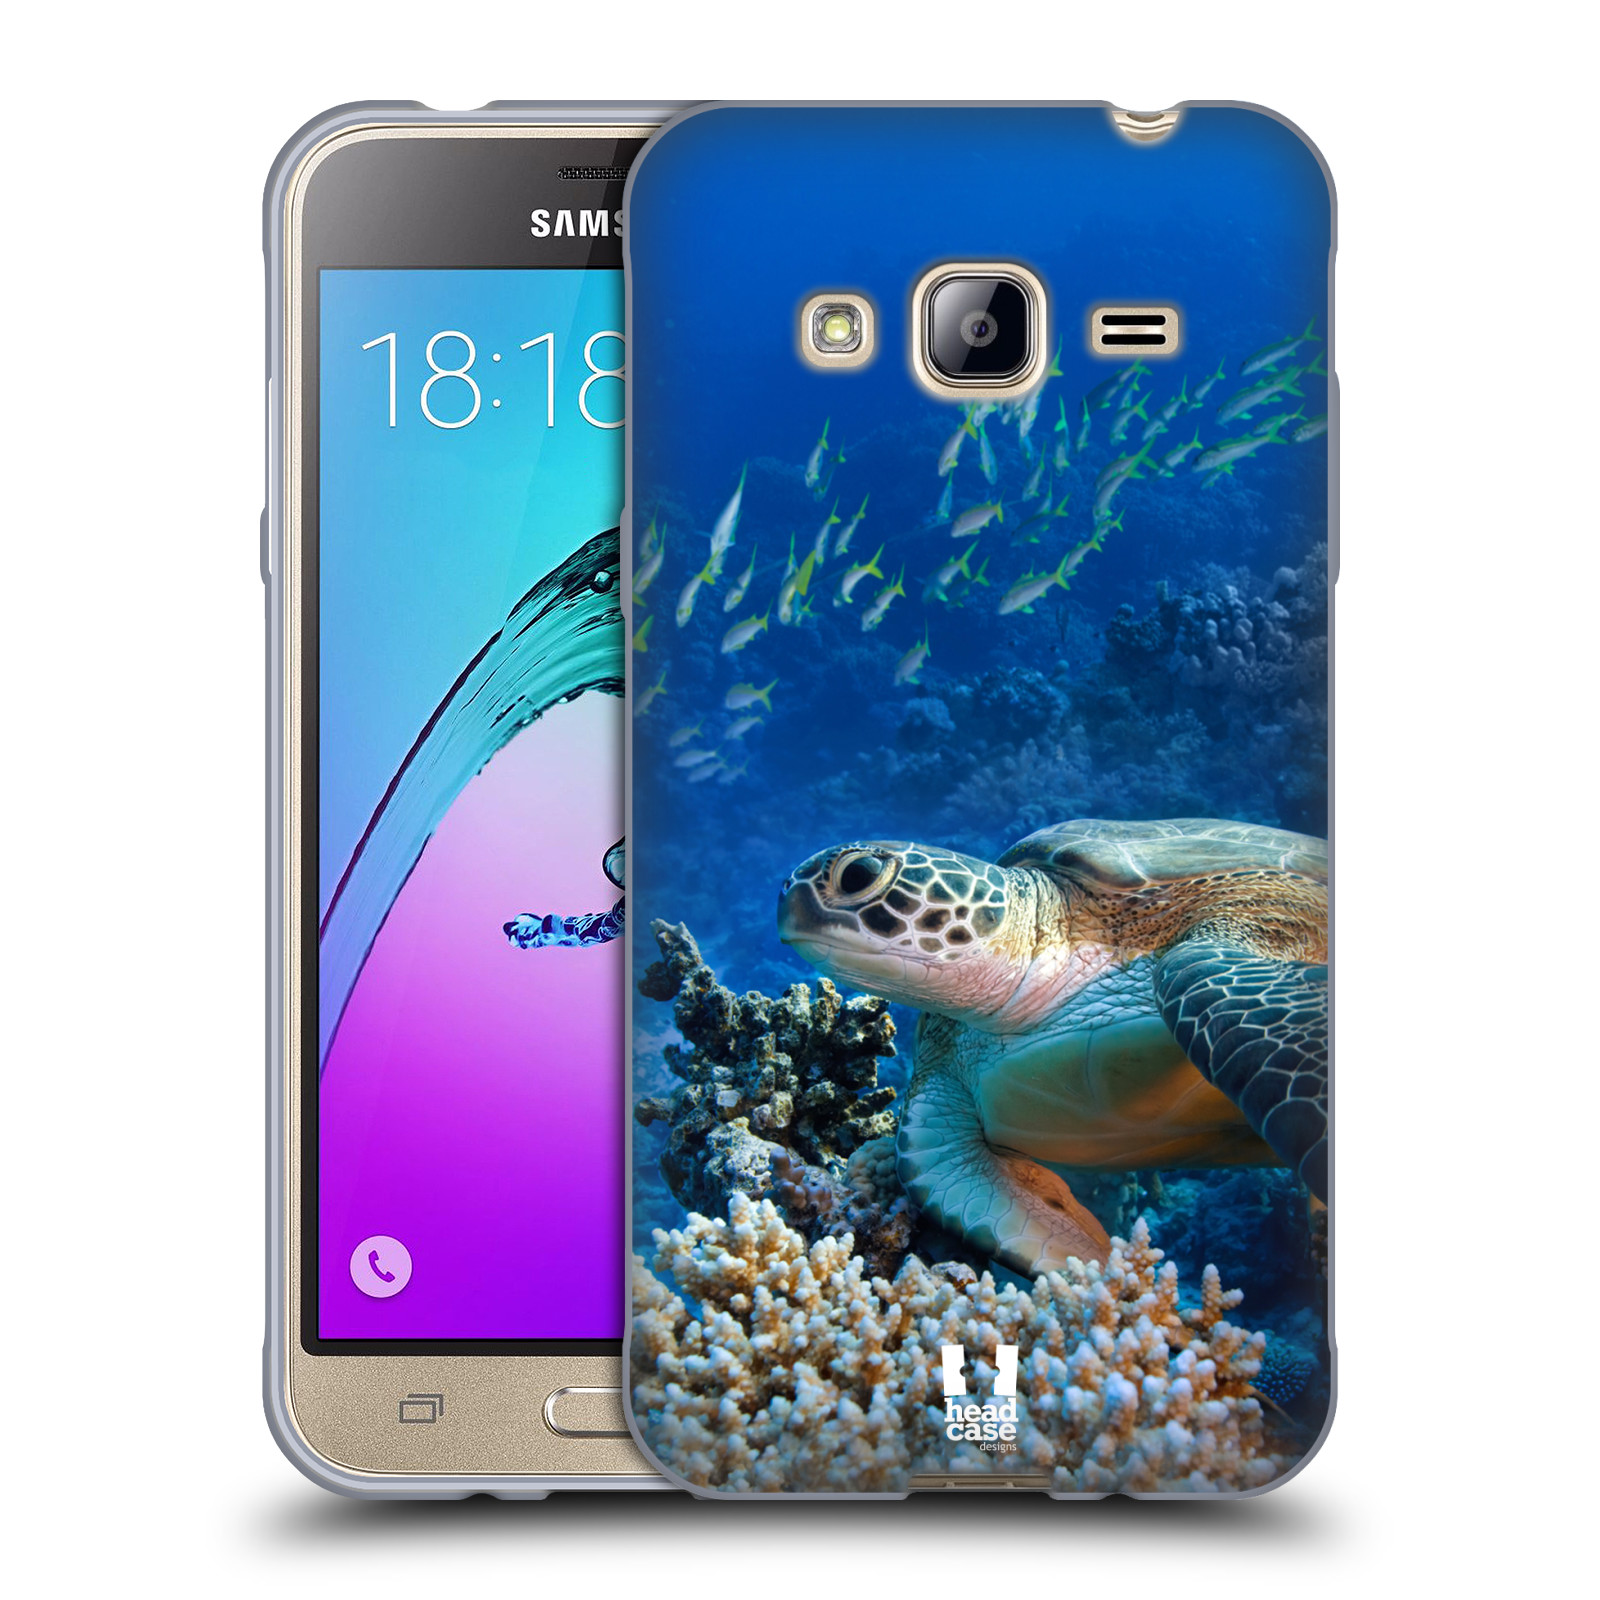 HEAD CASE silikonový obal na mobil Samsung Galaxy J3, J3 2016 vzor Divočina, Divoký život a zvířata foto MOŘSKÁ ŽELVA MODRÁ PODMOŘSKÁ HLADINA